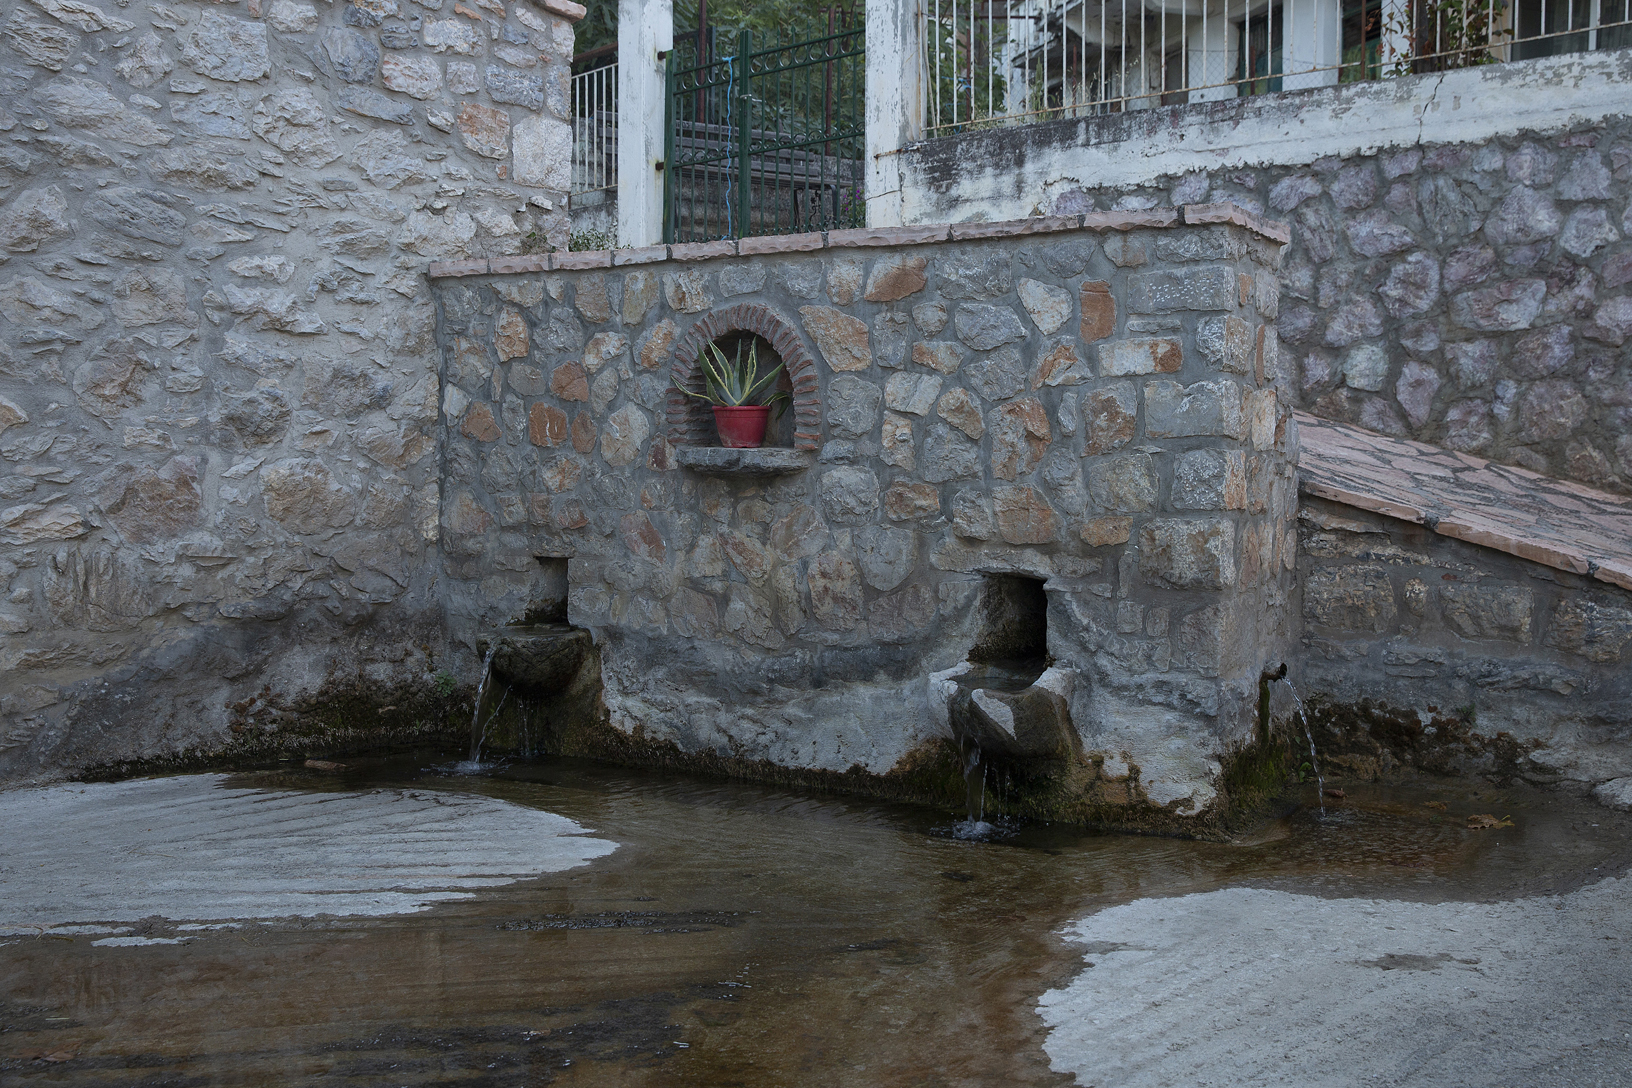 Πέτρινη βρύση, χωριό Παρθένι. Φωτογραφία: ©Βασίλης Συκάς, για τον Δήμο Κύμης-Αλιβερίου